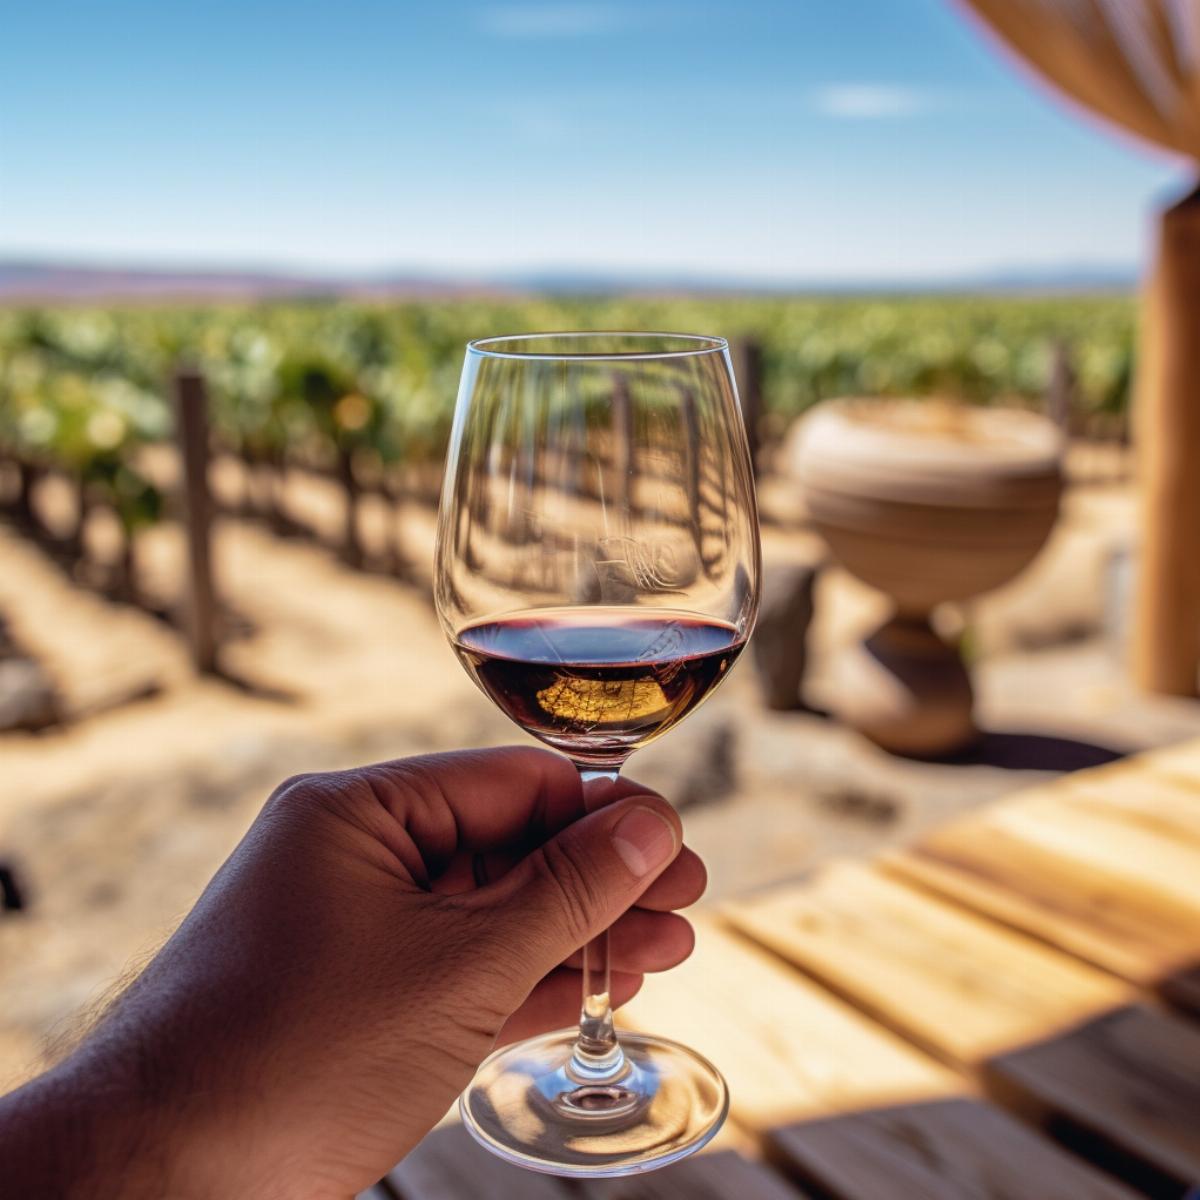 Avant d'arriver dans notre verre, le vin est le fruit d'un travail laborieux et de processus chimiques